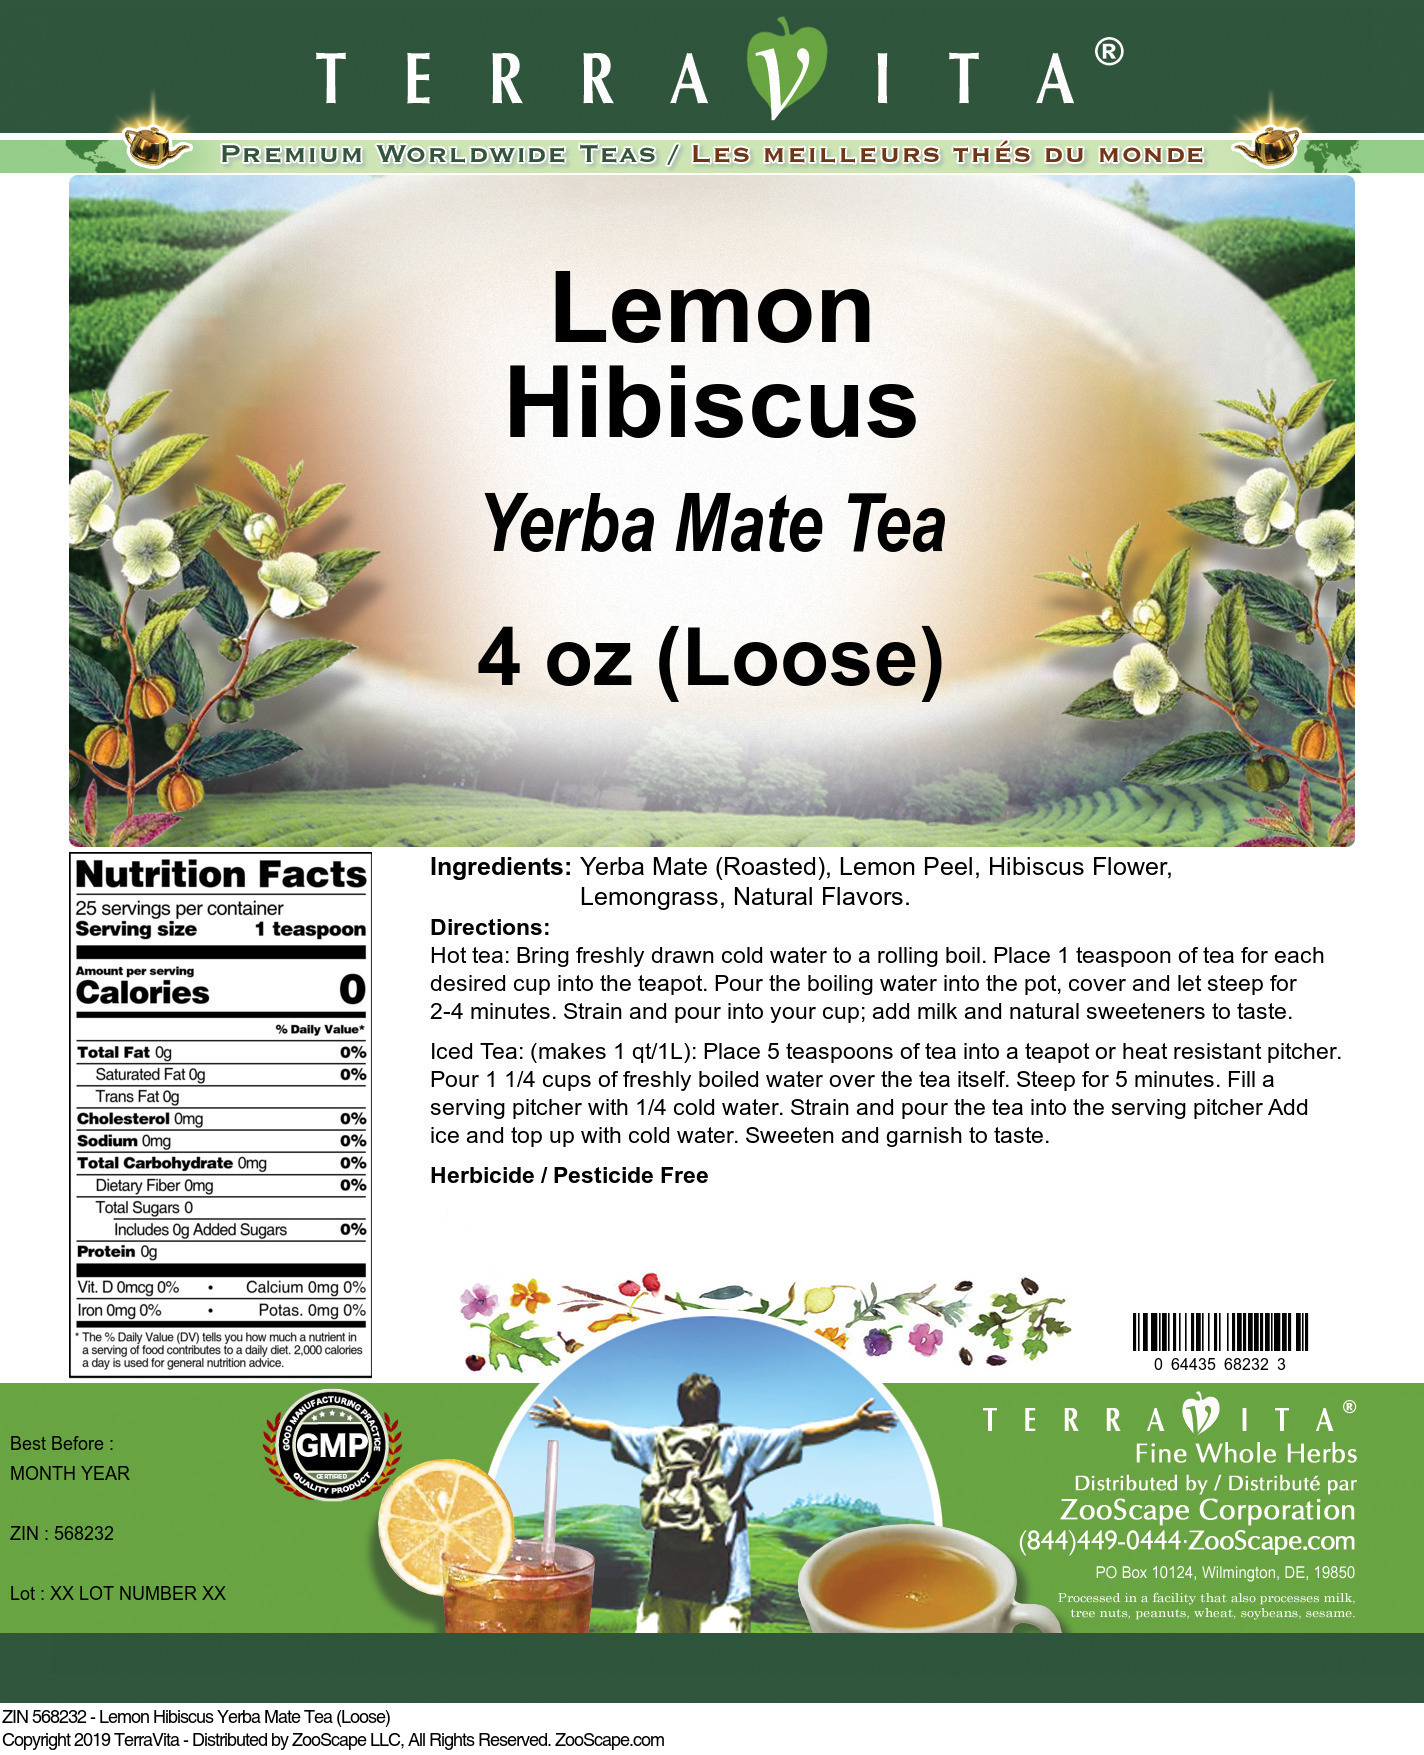 Lemon Hibiscus Yerba Mate Tea (Loose) - Label